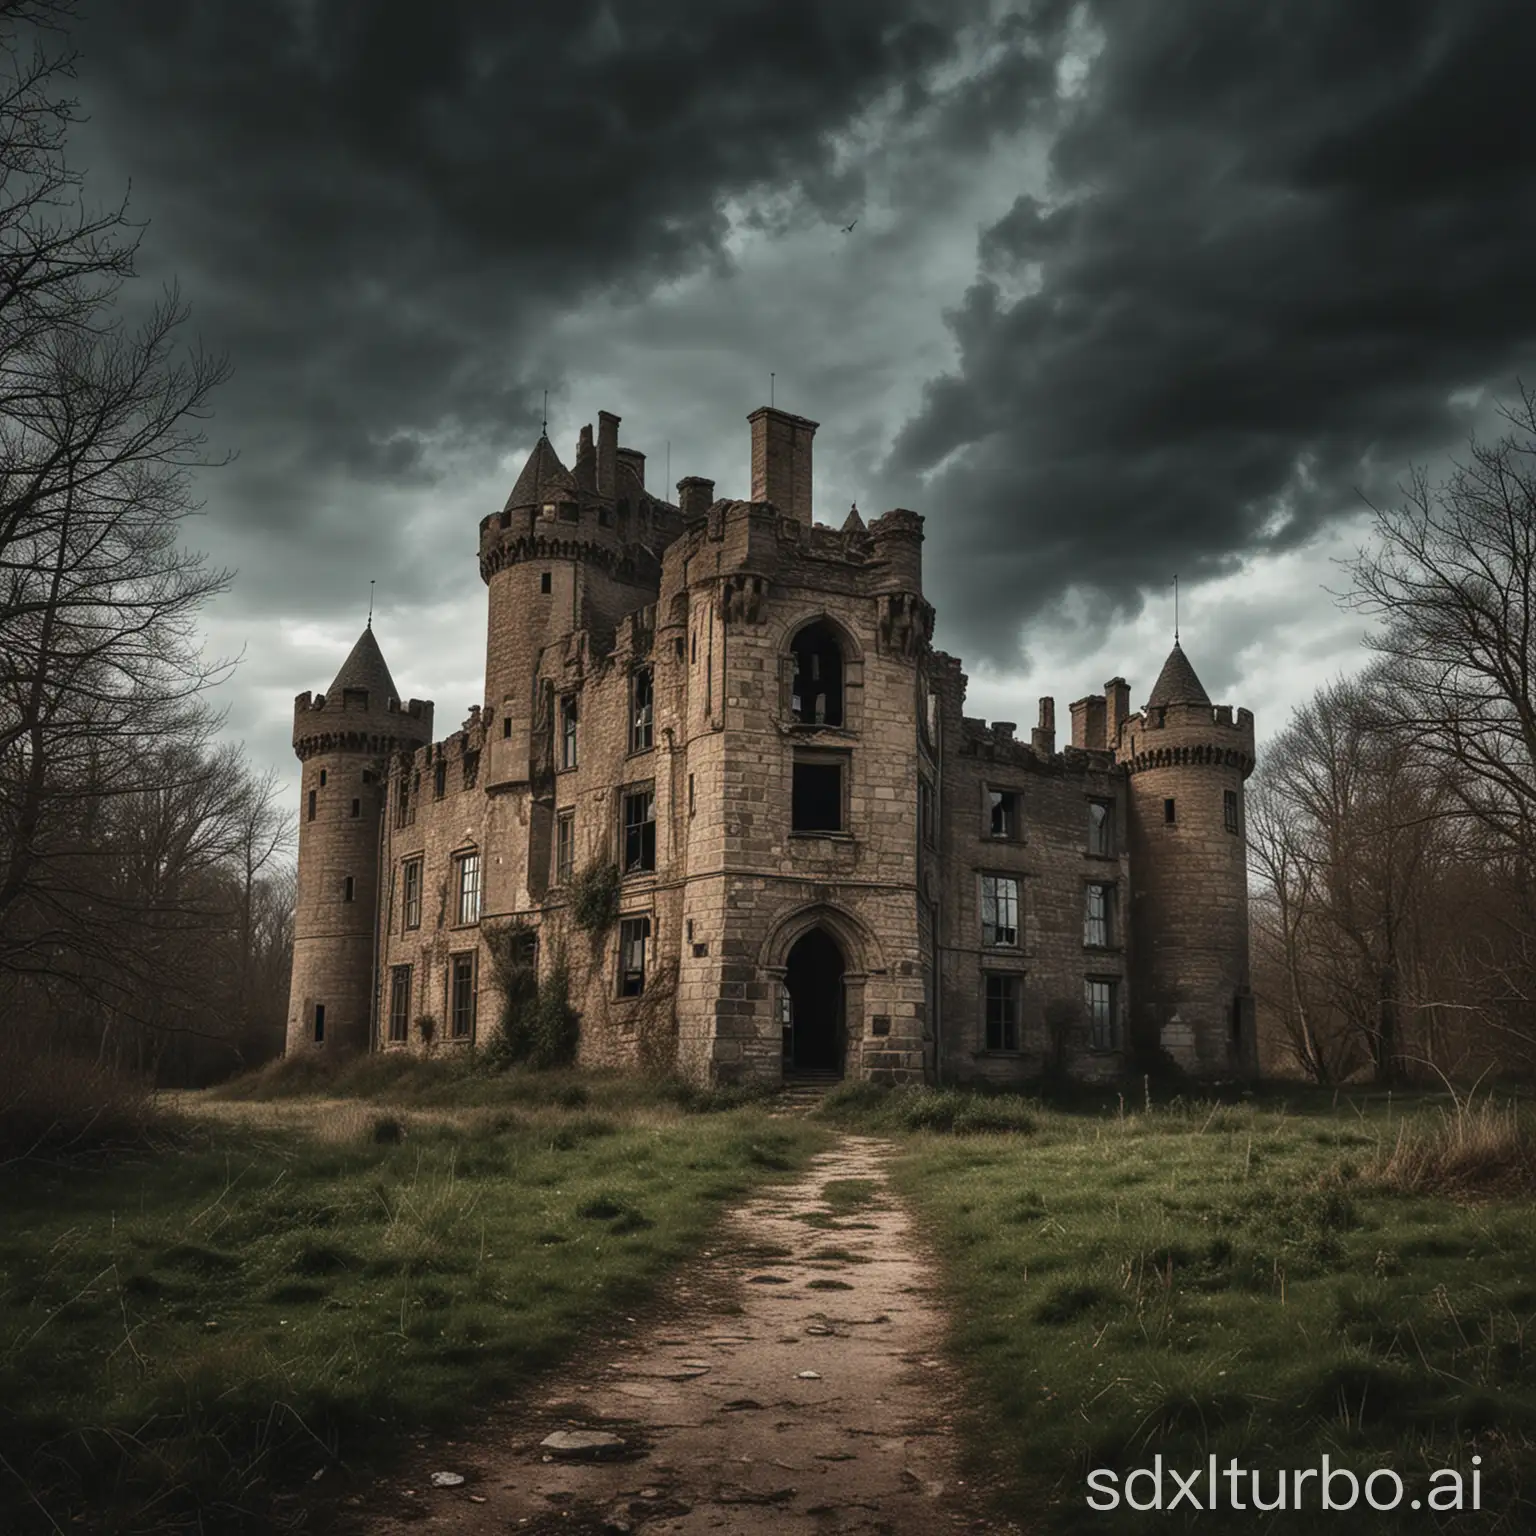 Abondoned castle
